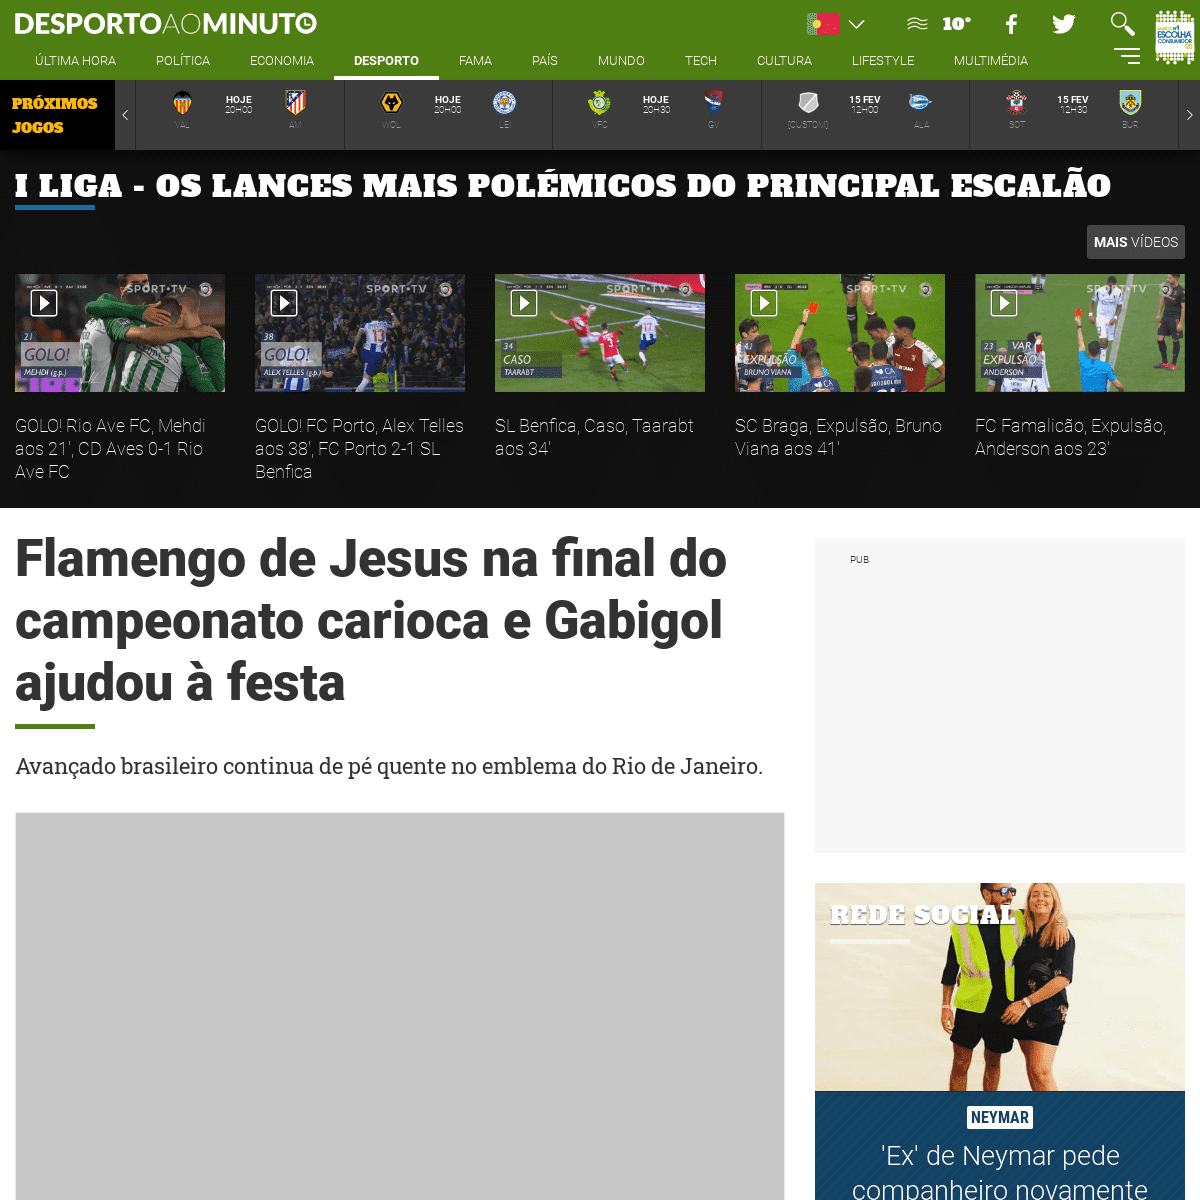 A complete backup of www.noticiasaominuto.com/desporto/1413078/flamengo-de-jesus-na-final-do-campeonato-carioca-e-gabigol-ajudou